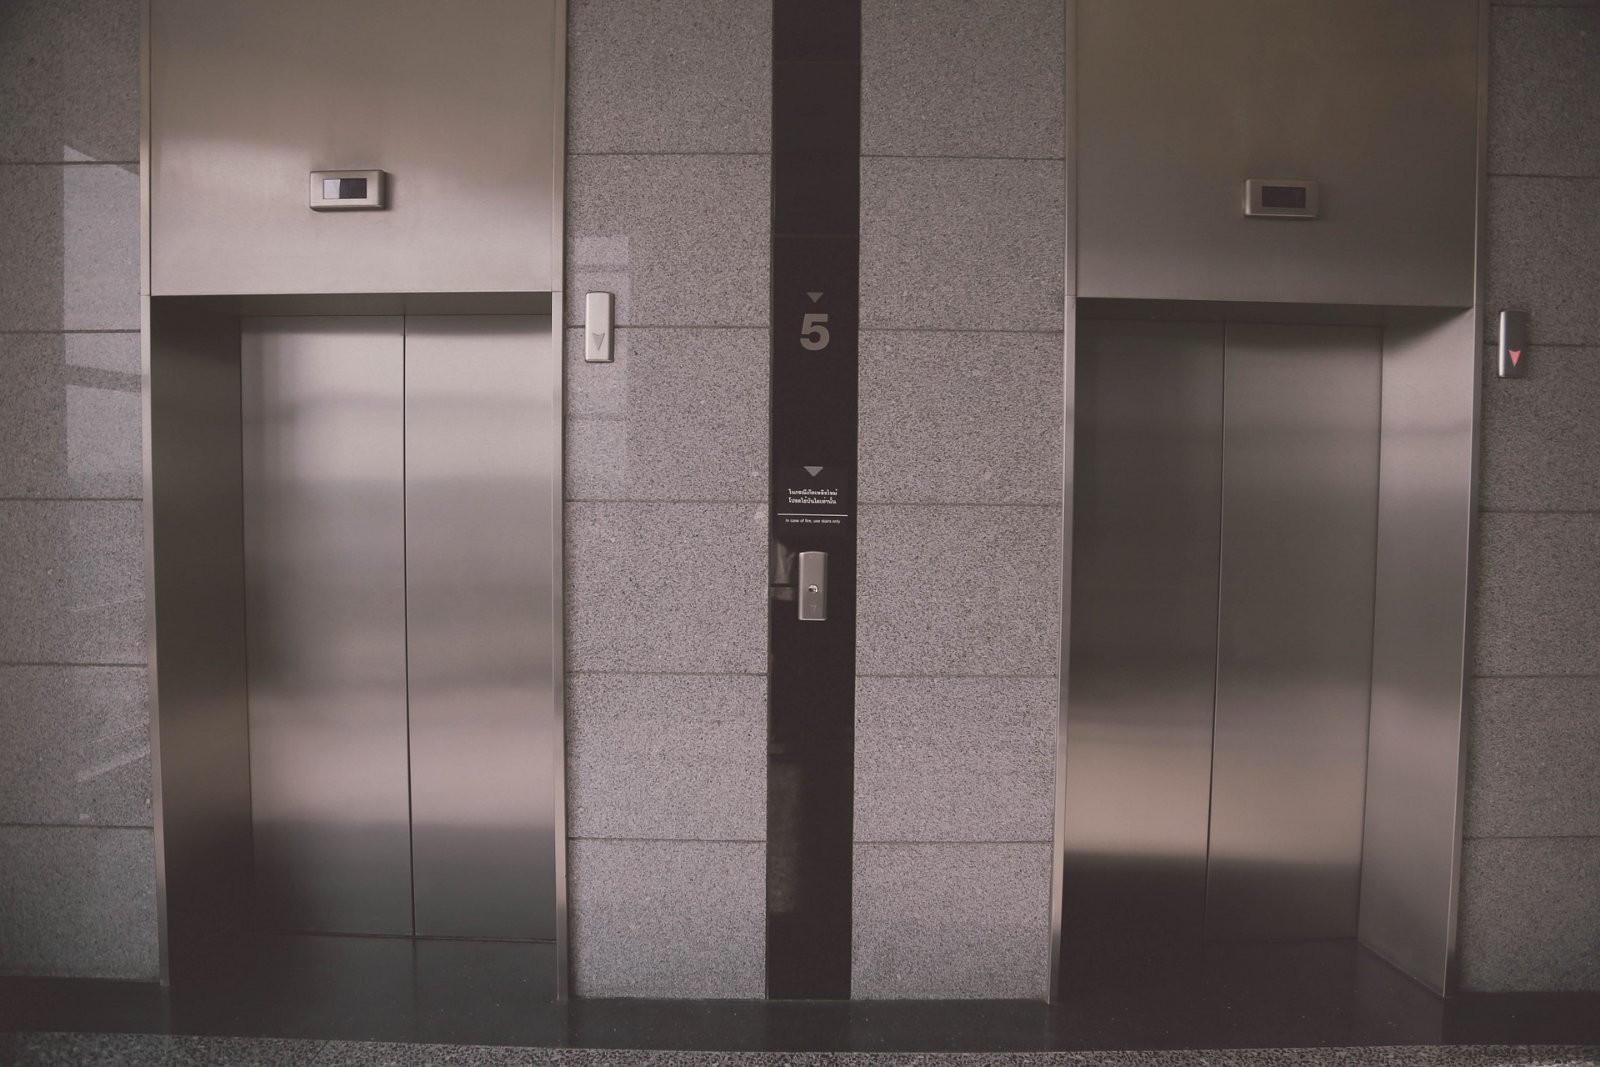 Плата за лифт в многоквартирном доме